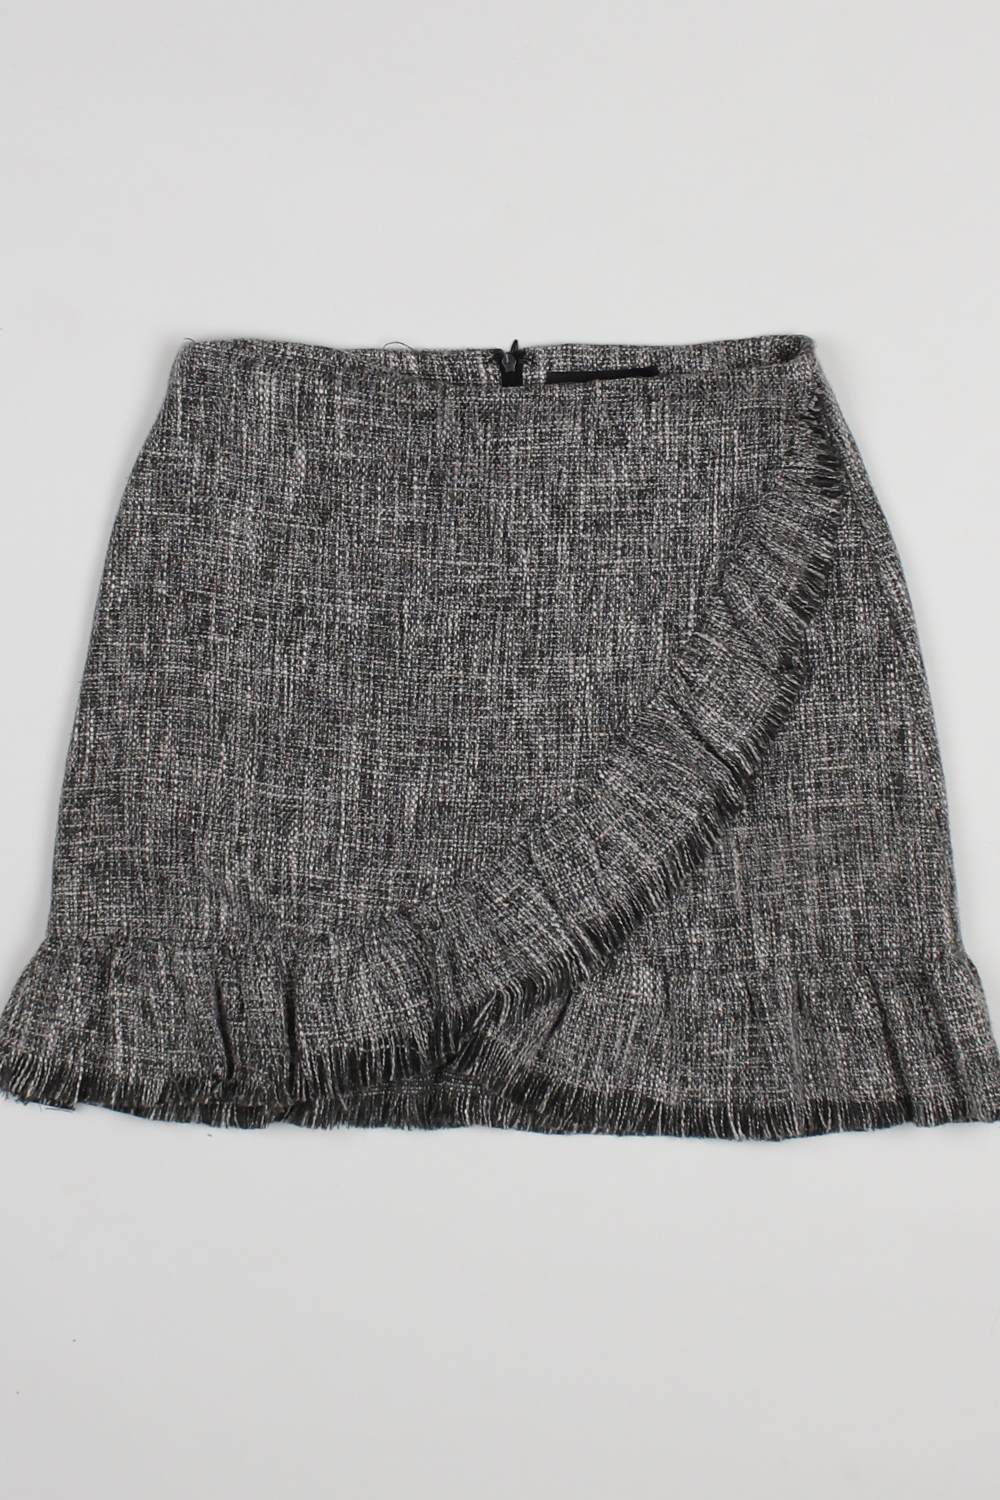 Rosebullet Grey Frayed Hem Skirt 10